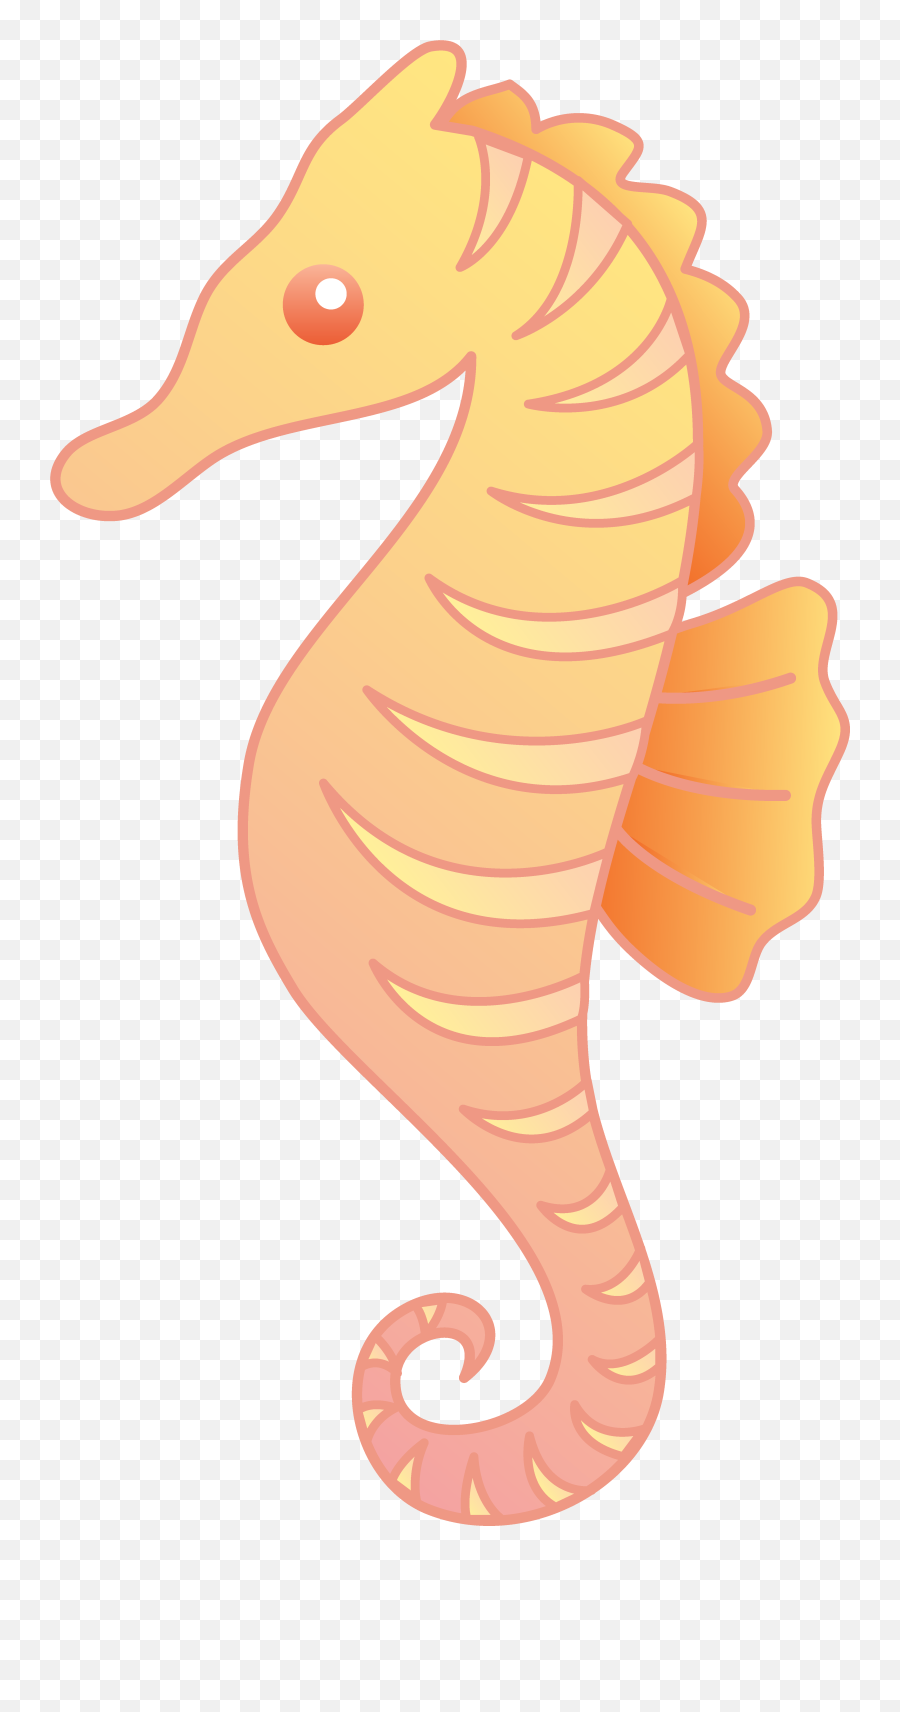 Cute Seahorse Drawing Free Image Download - Seahorse Clipart Emoji,Facebook Emoticons Seahorse